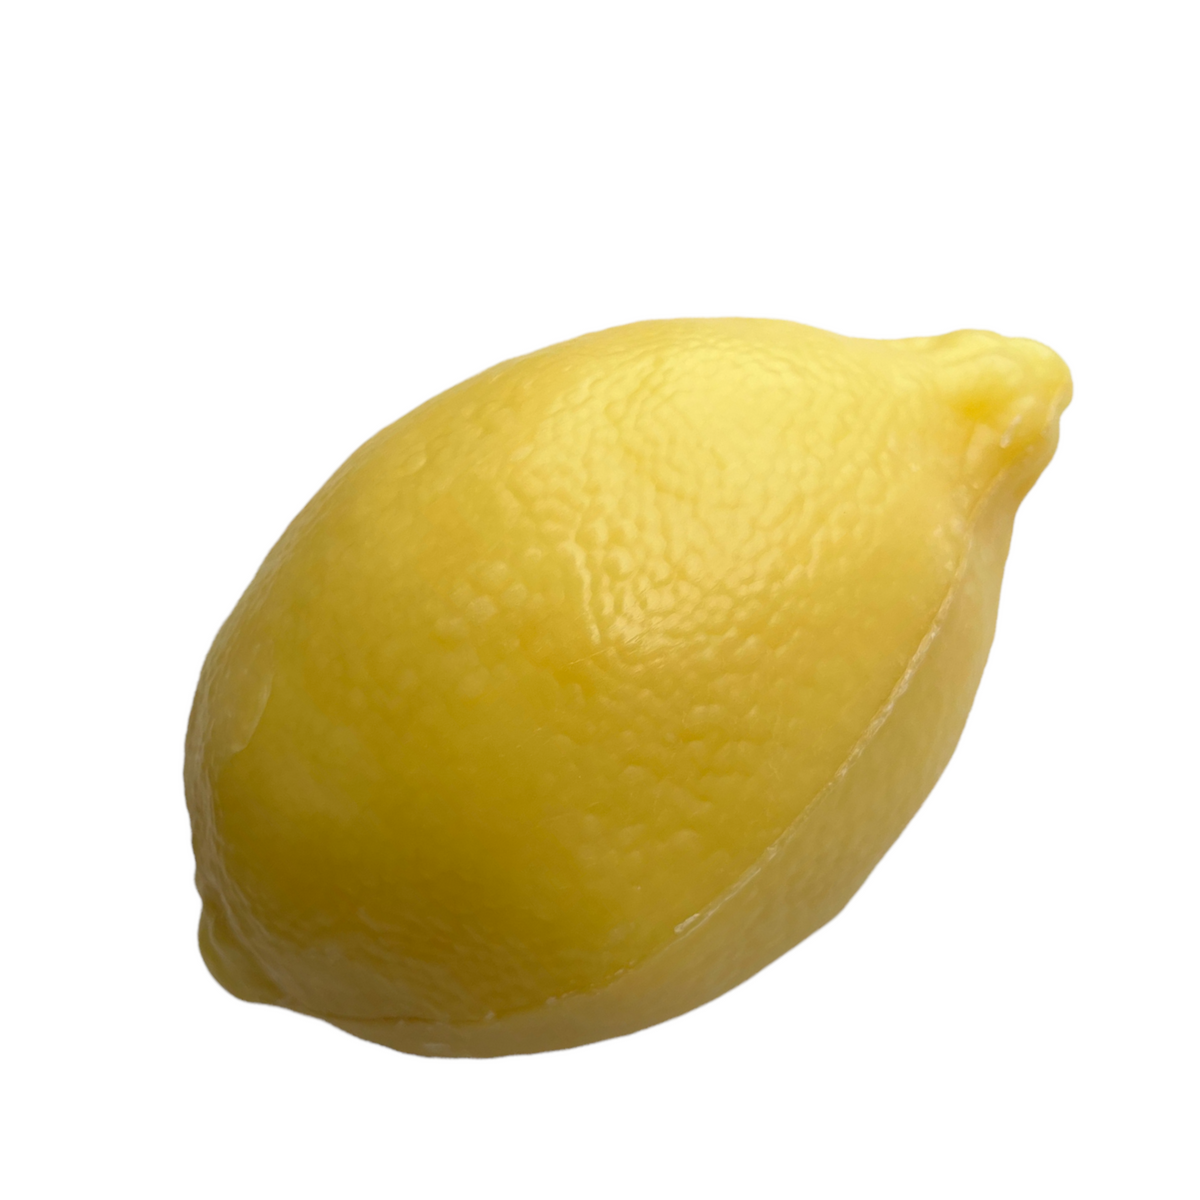 125G Savon De Marseille Lemon / Citron Shape French Soap